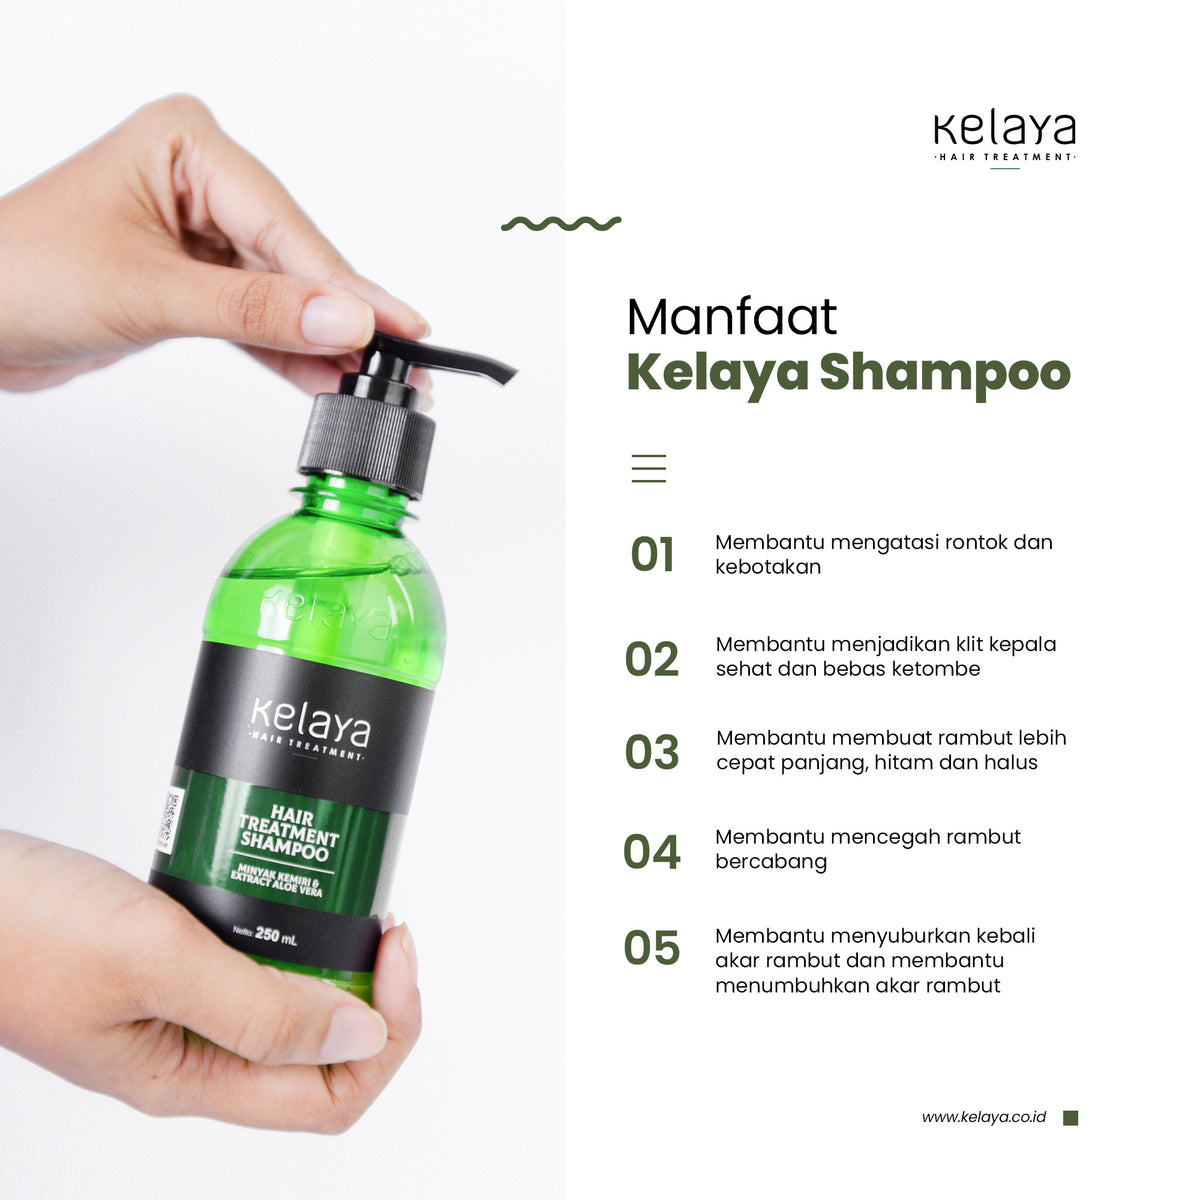 Kelaya Hair Treatment Shampoo 250 ml